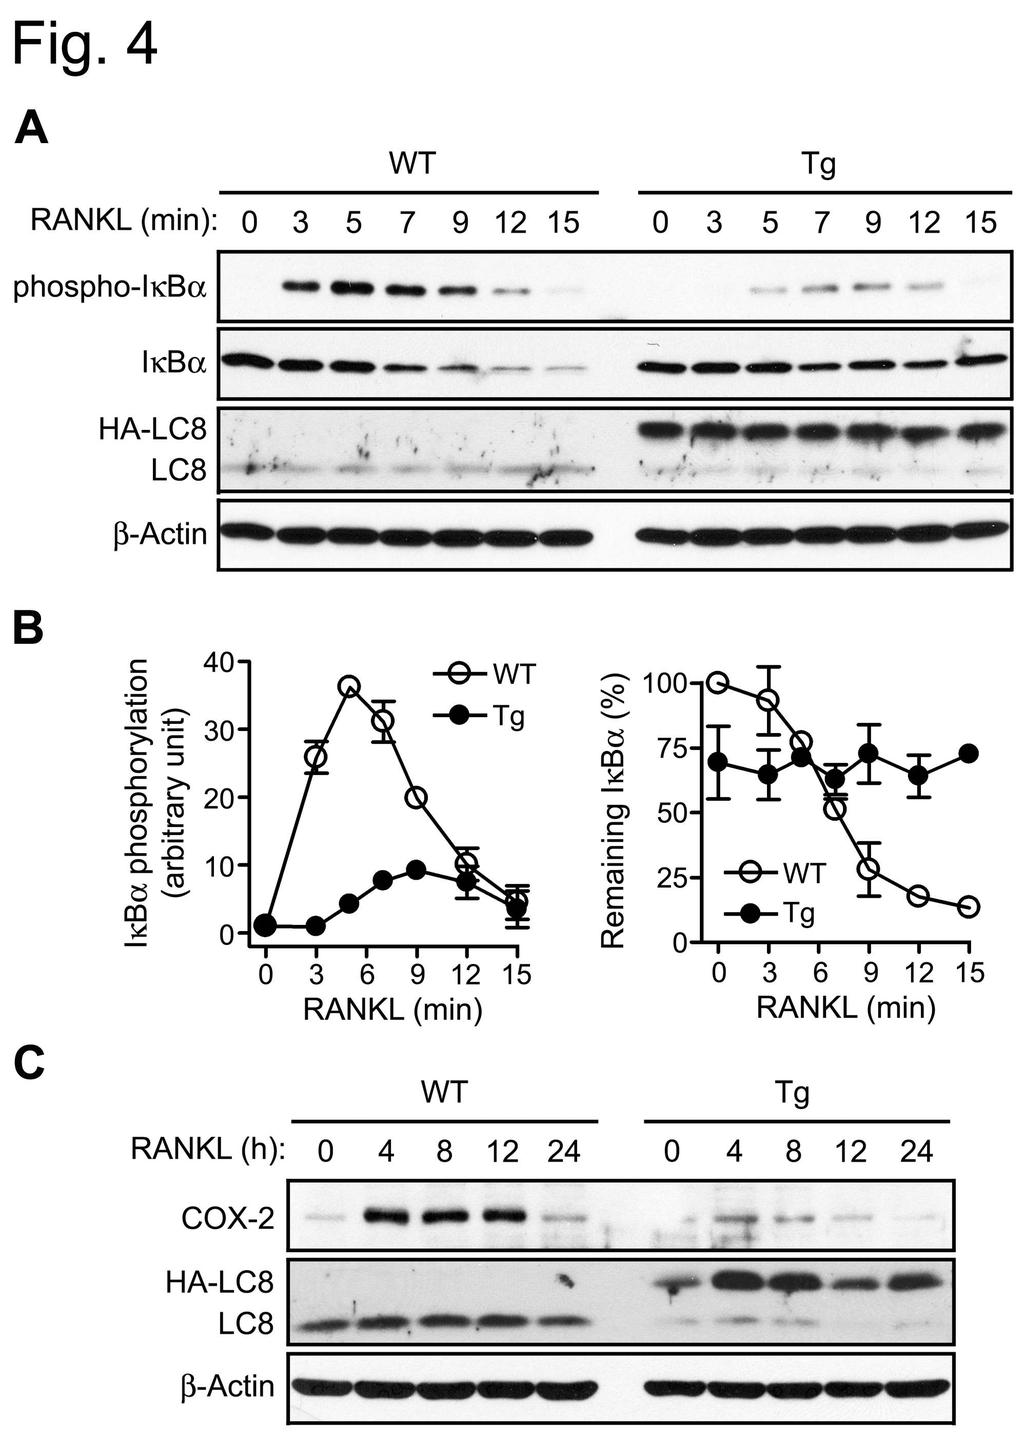 라. LC8 형질전환마우스로부터분리된골수세포의파골세포분화시 LC8 의 NF-κB 활성억제 NF-κB는파골세포분화에서중요한역할을하며, LC8은새로이밝혀진 NF-κB 억제인자이므로 LC8의파골세포분화억제는 NF-κB 활성억제를통해이루어졌을가능성이크다.